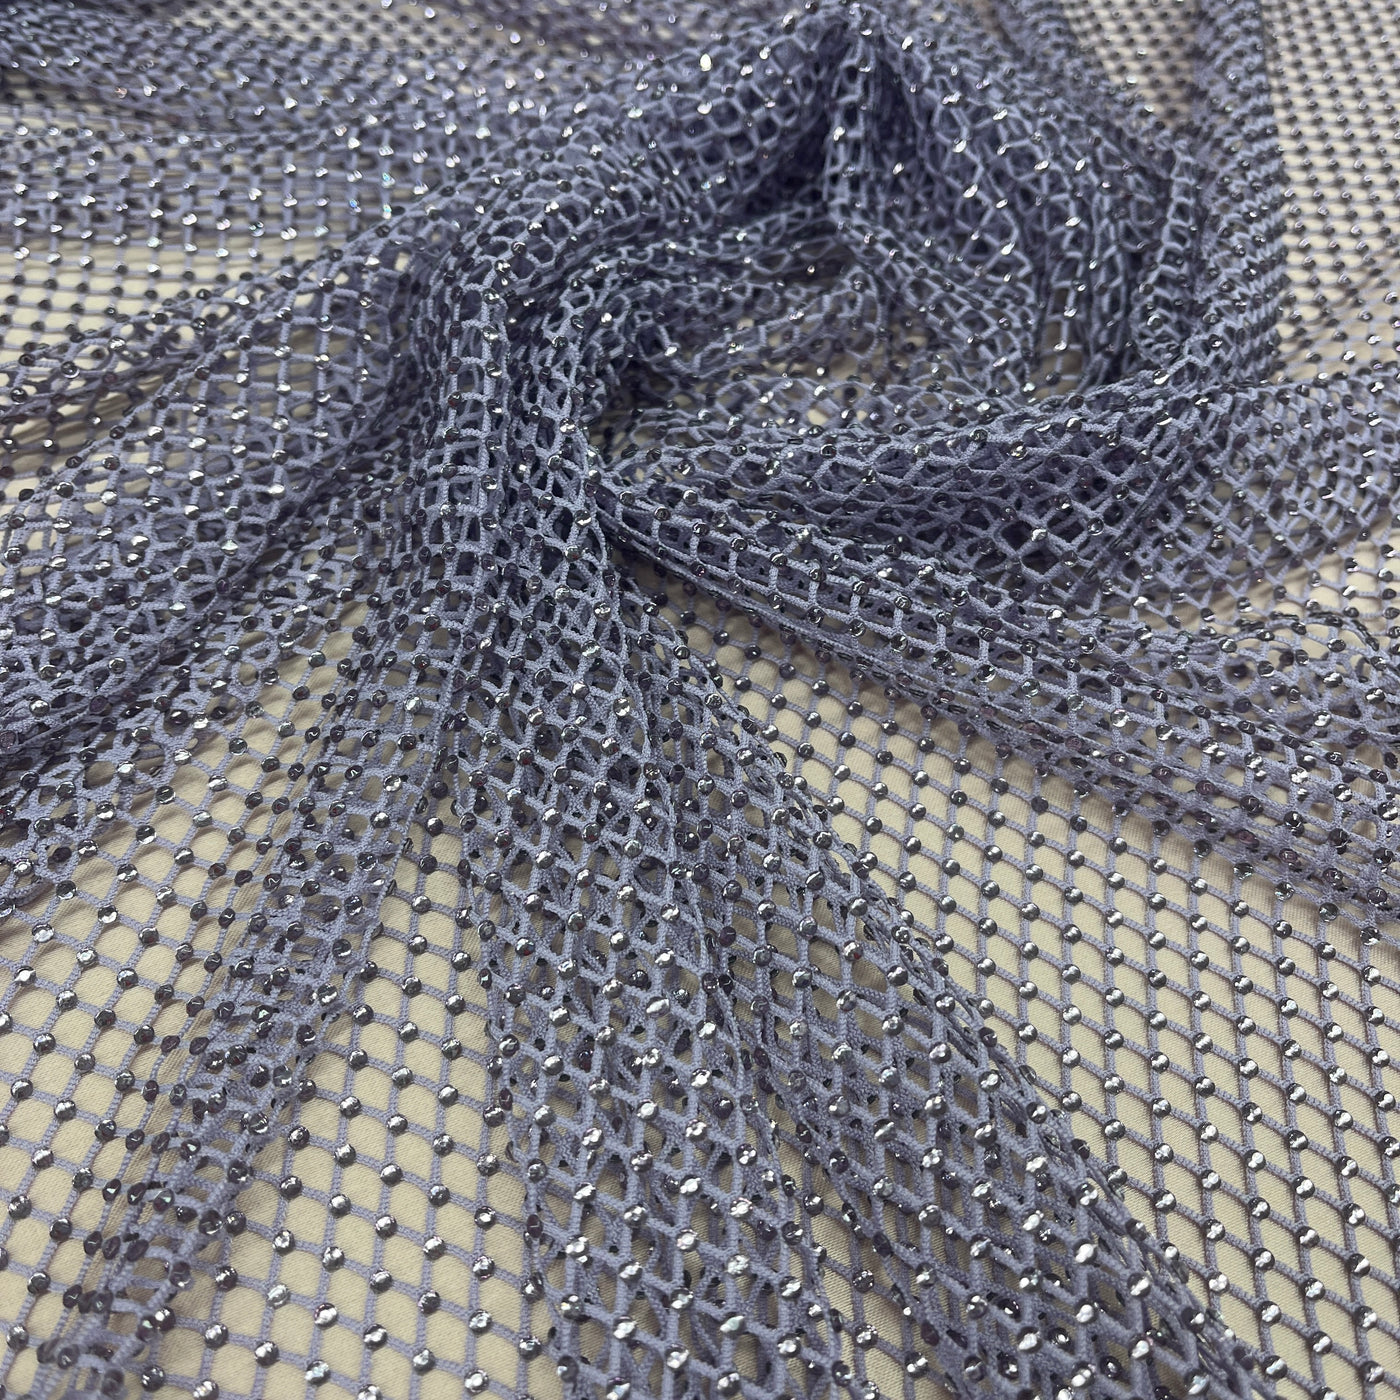 Diamond Fishnet Fabric 4 Way Stretch | Lace USA